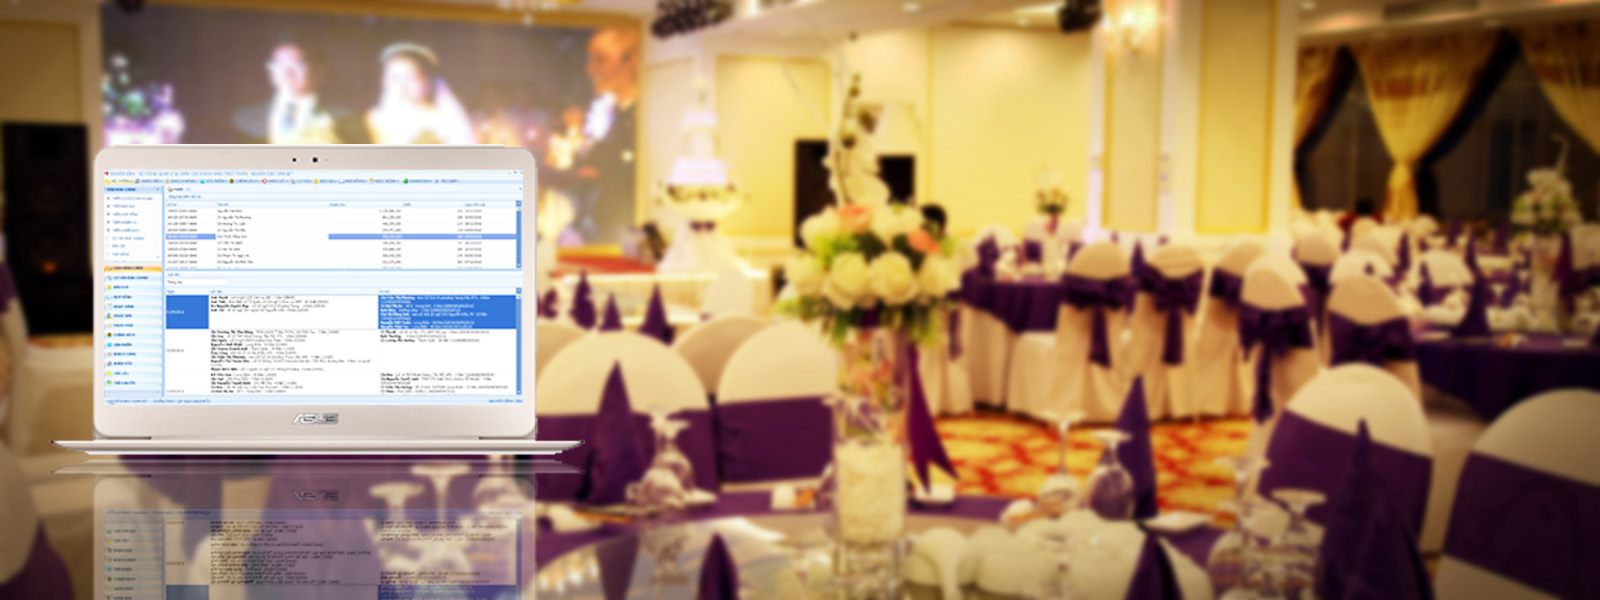 Phần mềm quản lý chăm sóc khách hàng cho tiệc cưới